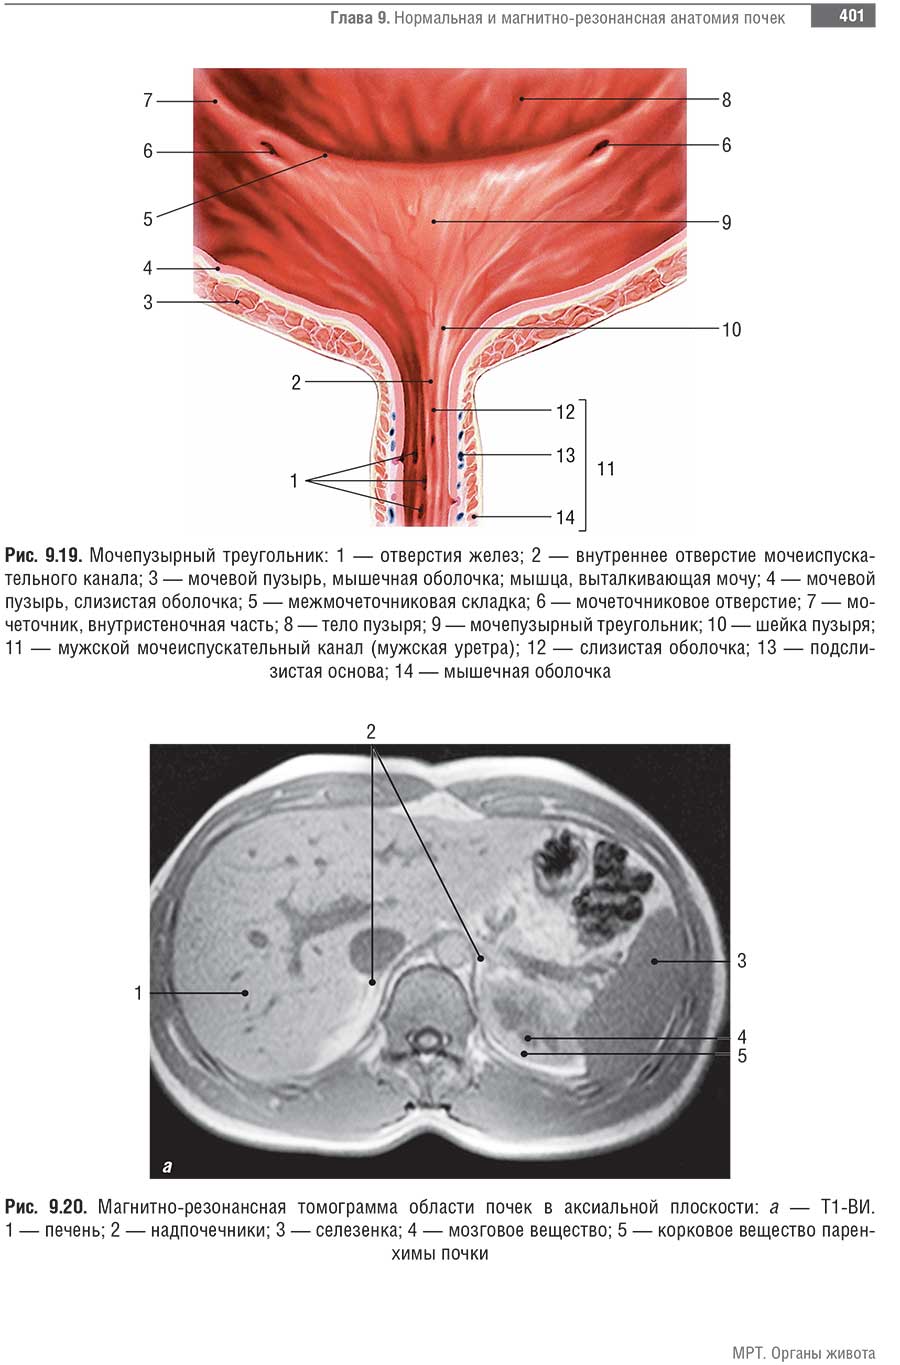 Магнитно-резонансная томограмма области почек в аксиальной плоскости